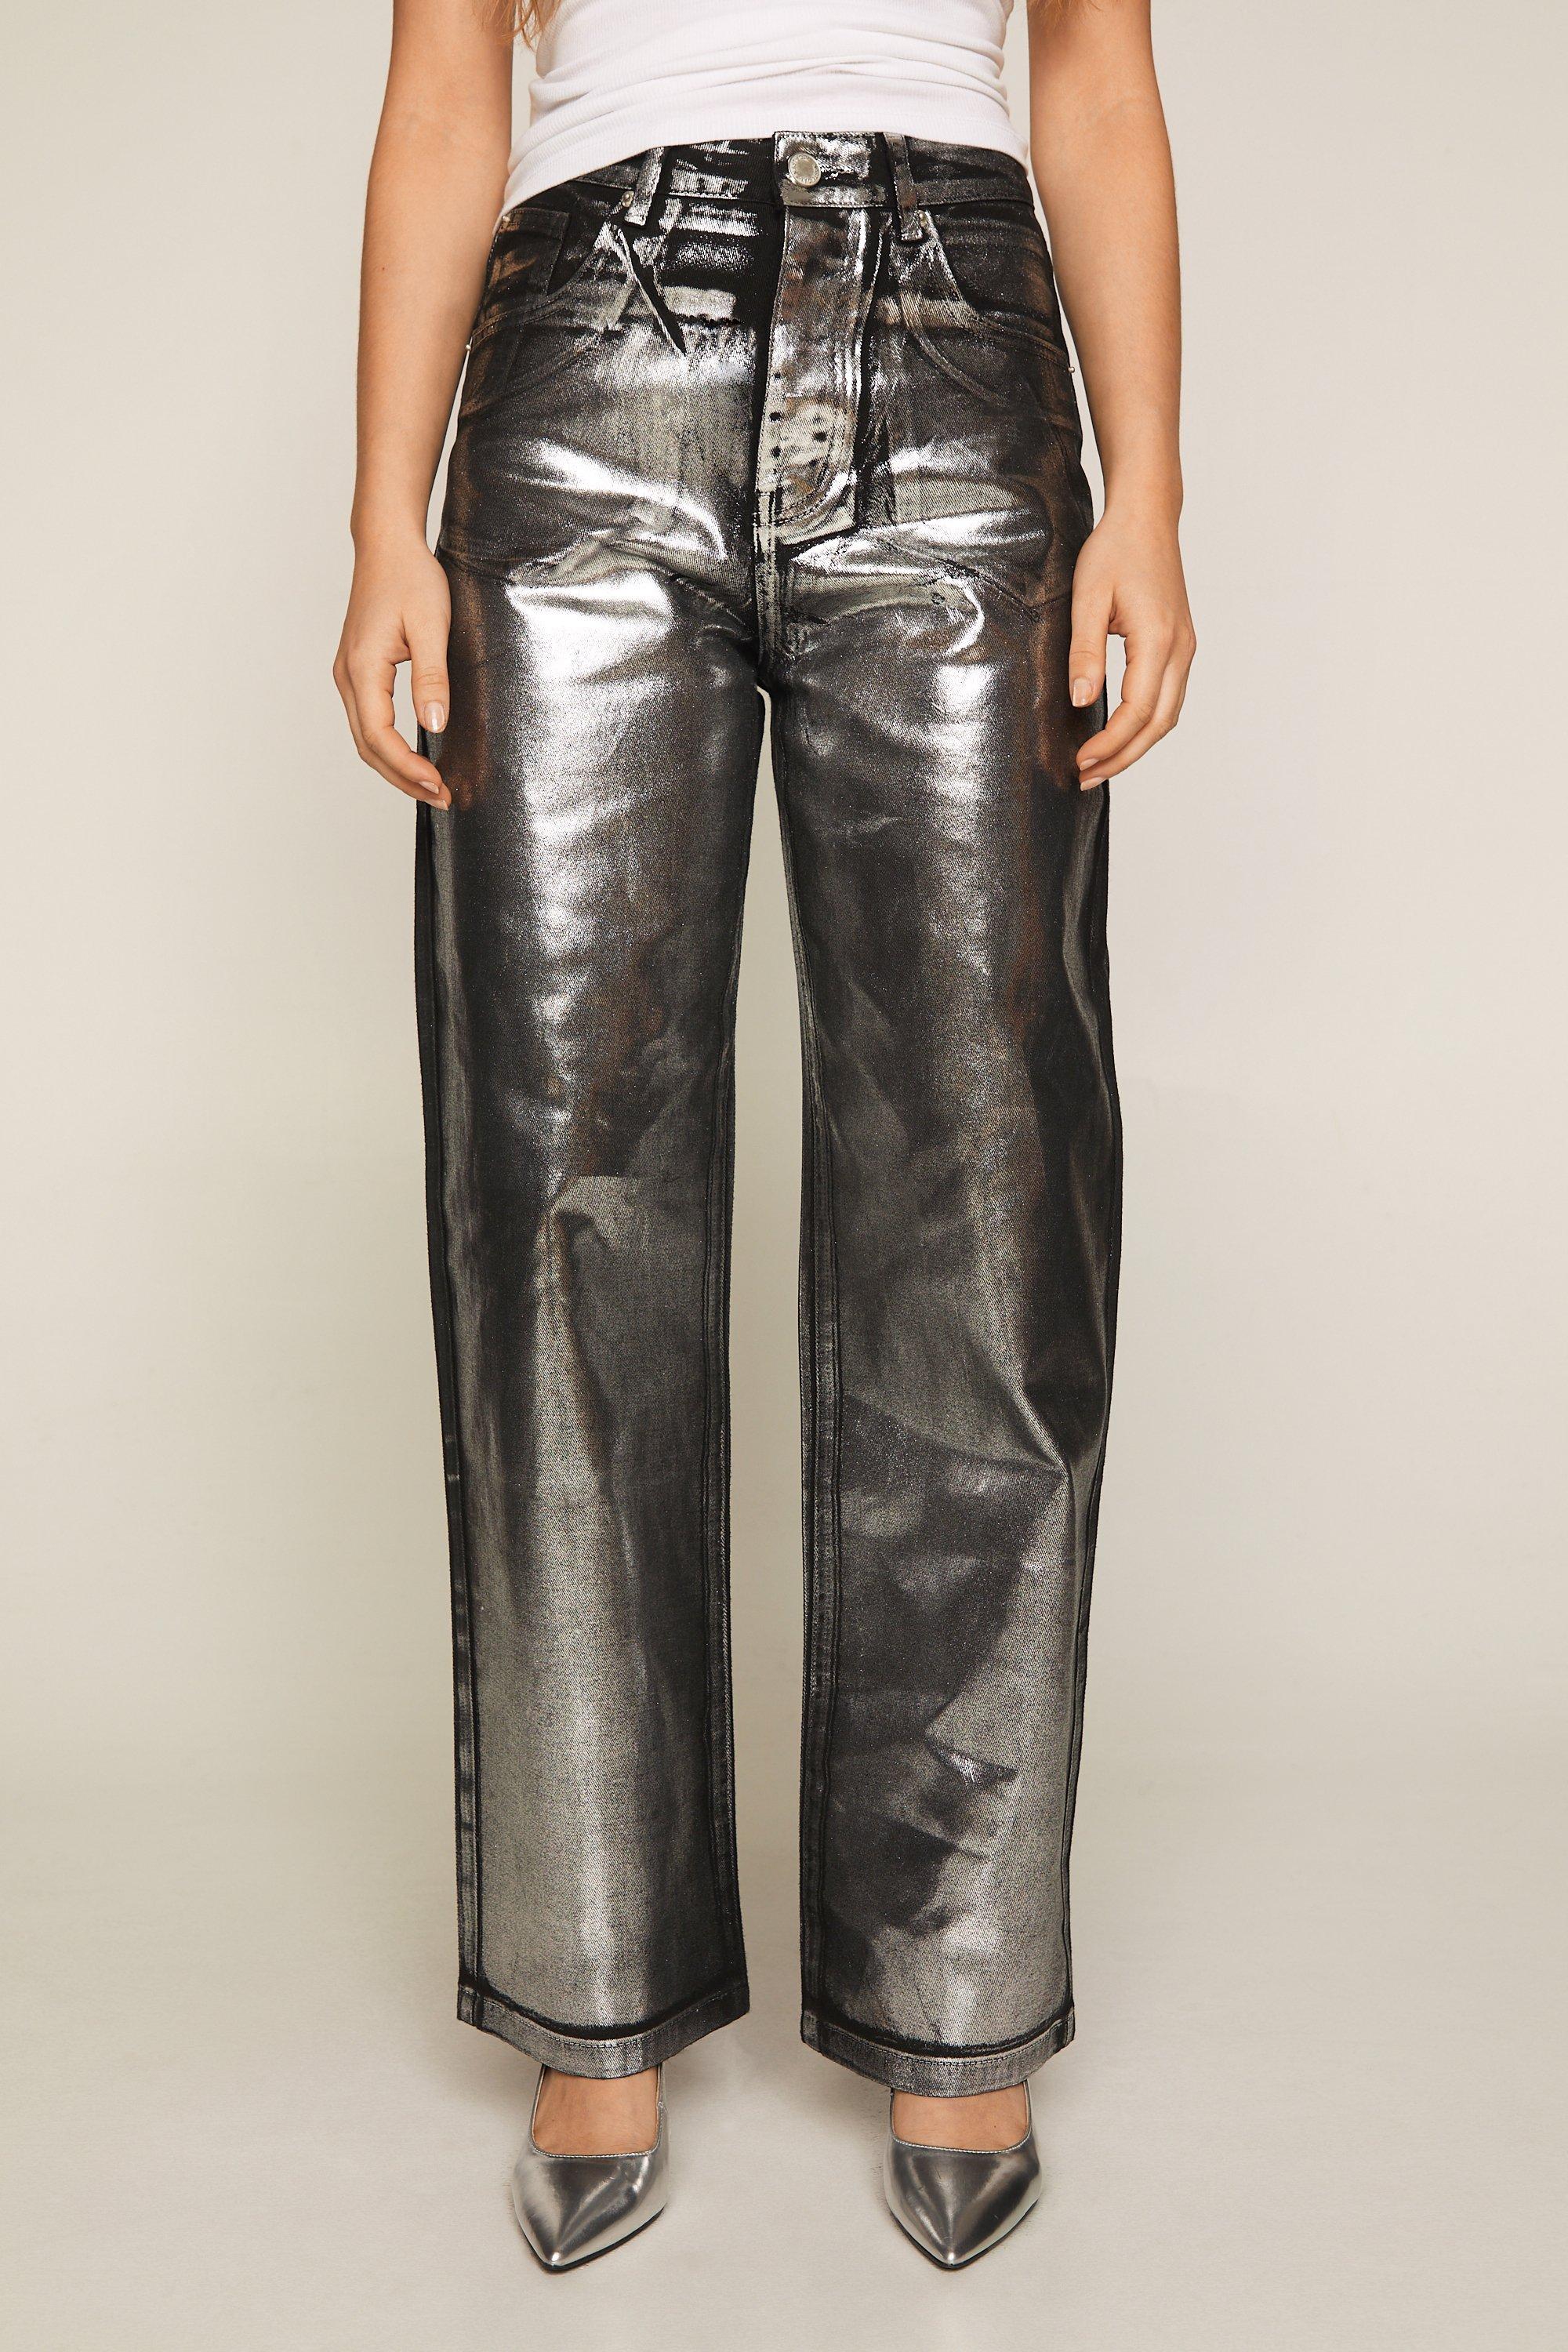 Metallic Black Coated Skinny Jeans | FreeSpirits | SilkFred AU